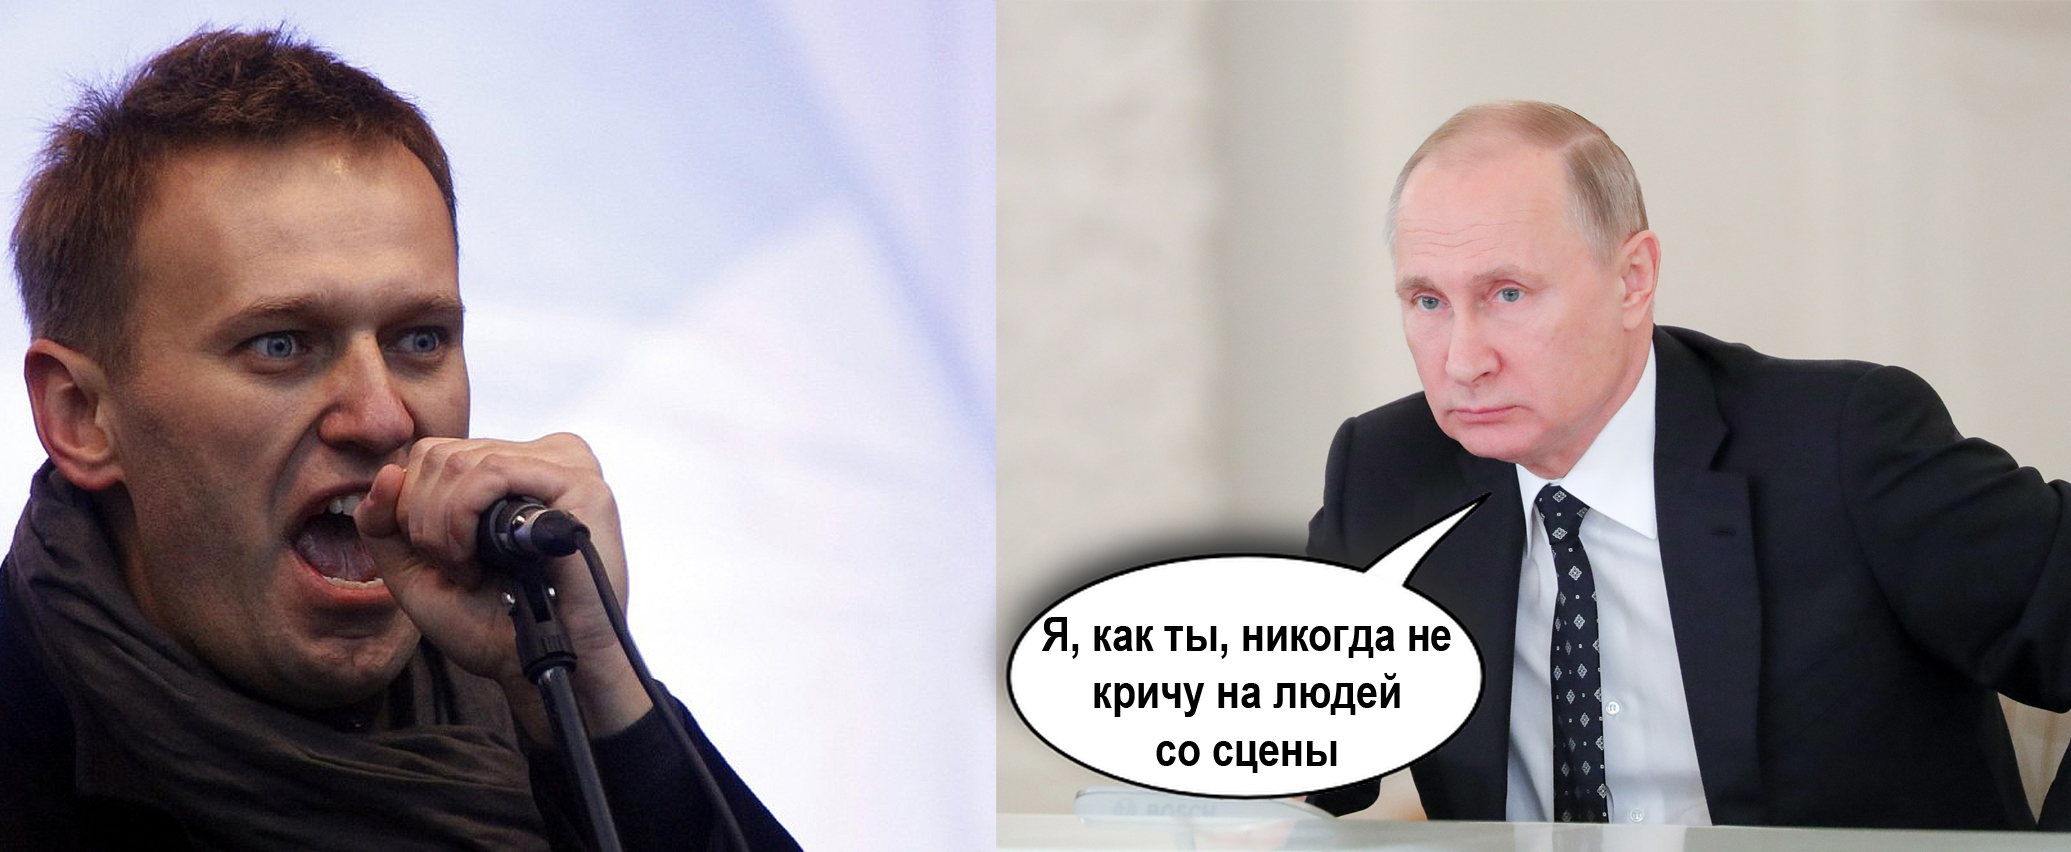 Путин и Навальный: Я, как ты, никогда не кричу на людей